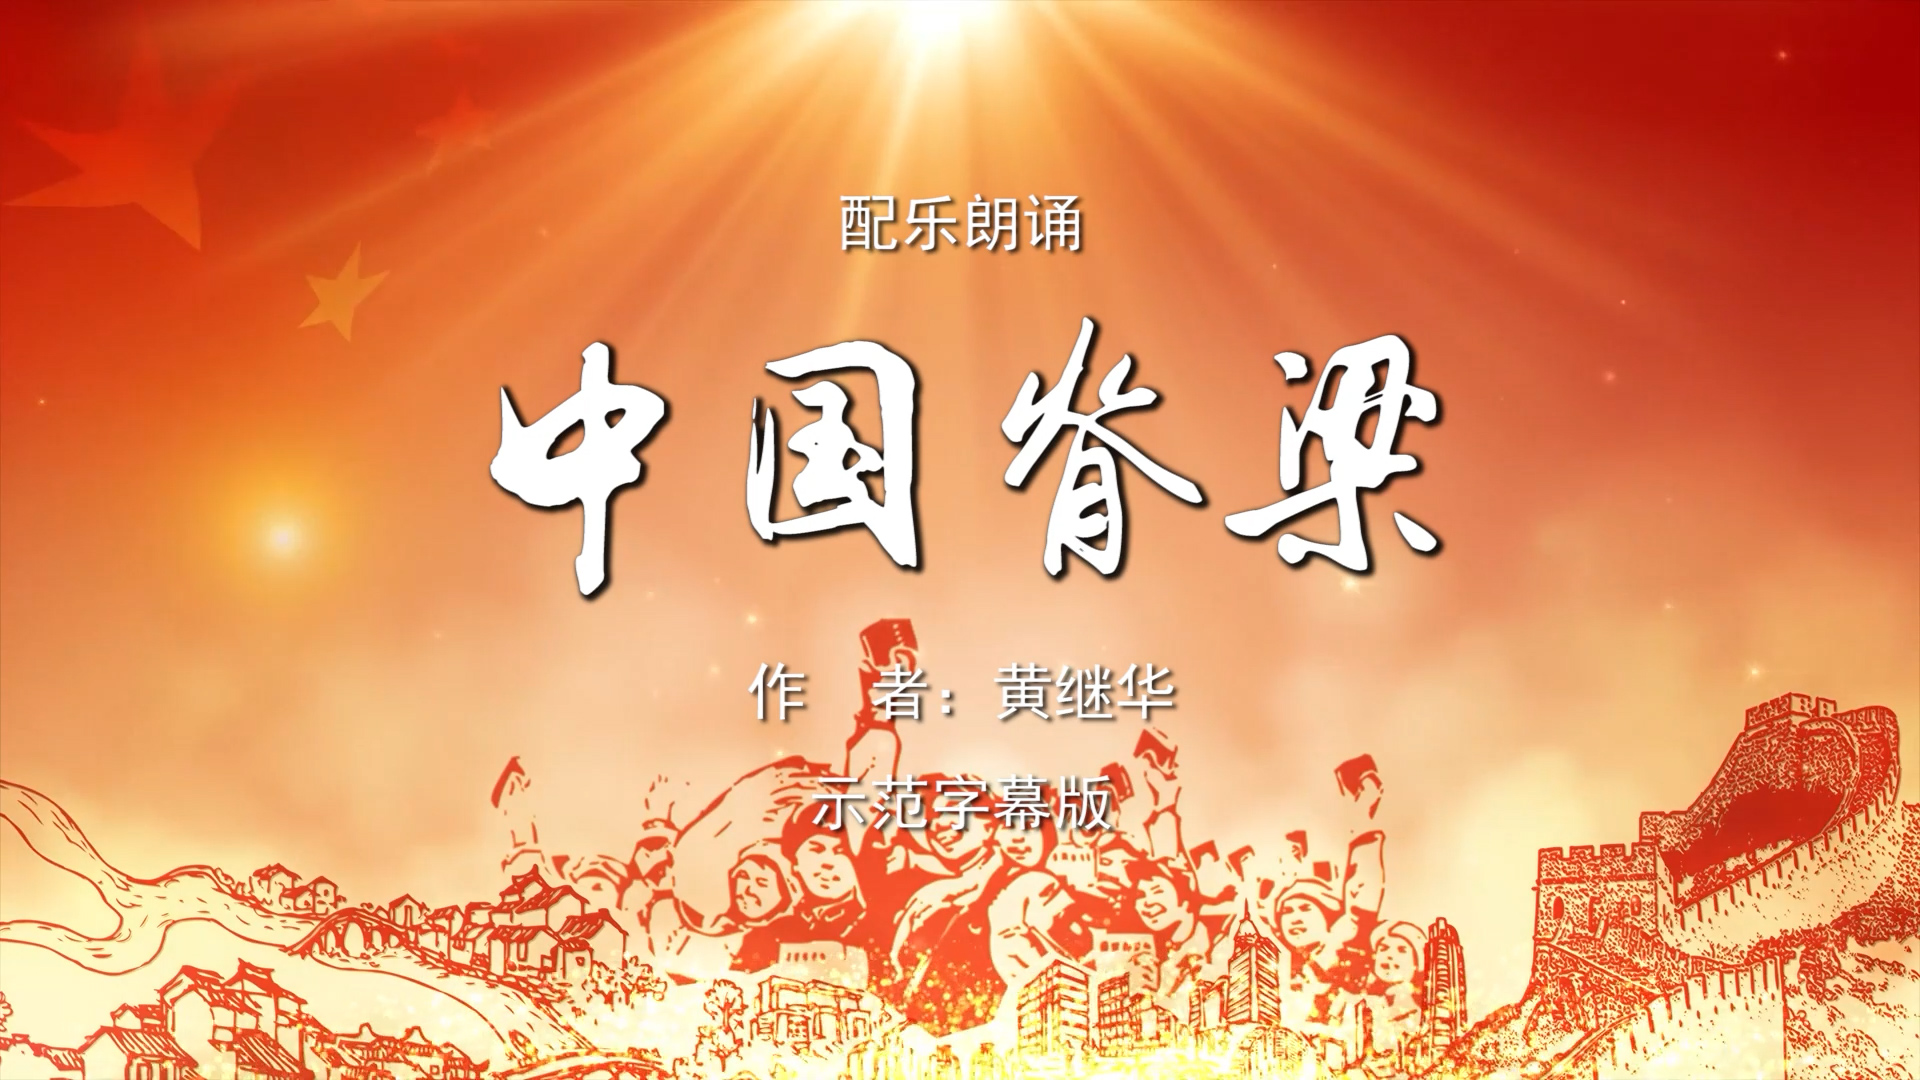 中国脊梁 双人诗歌朗诵配乐伴奏舞台演出LED背景视频素材TV